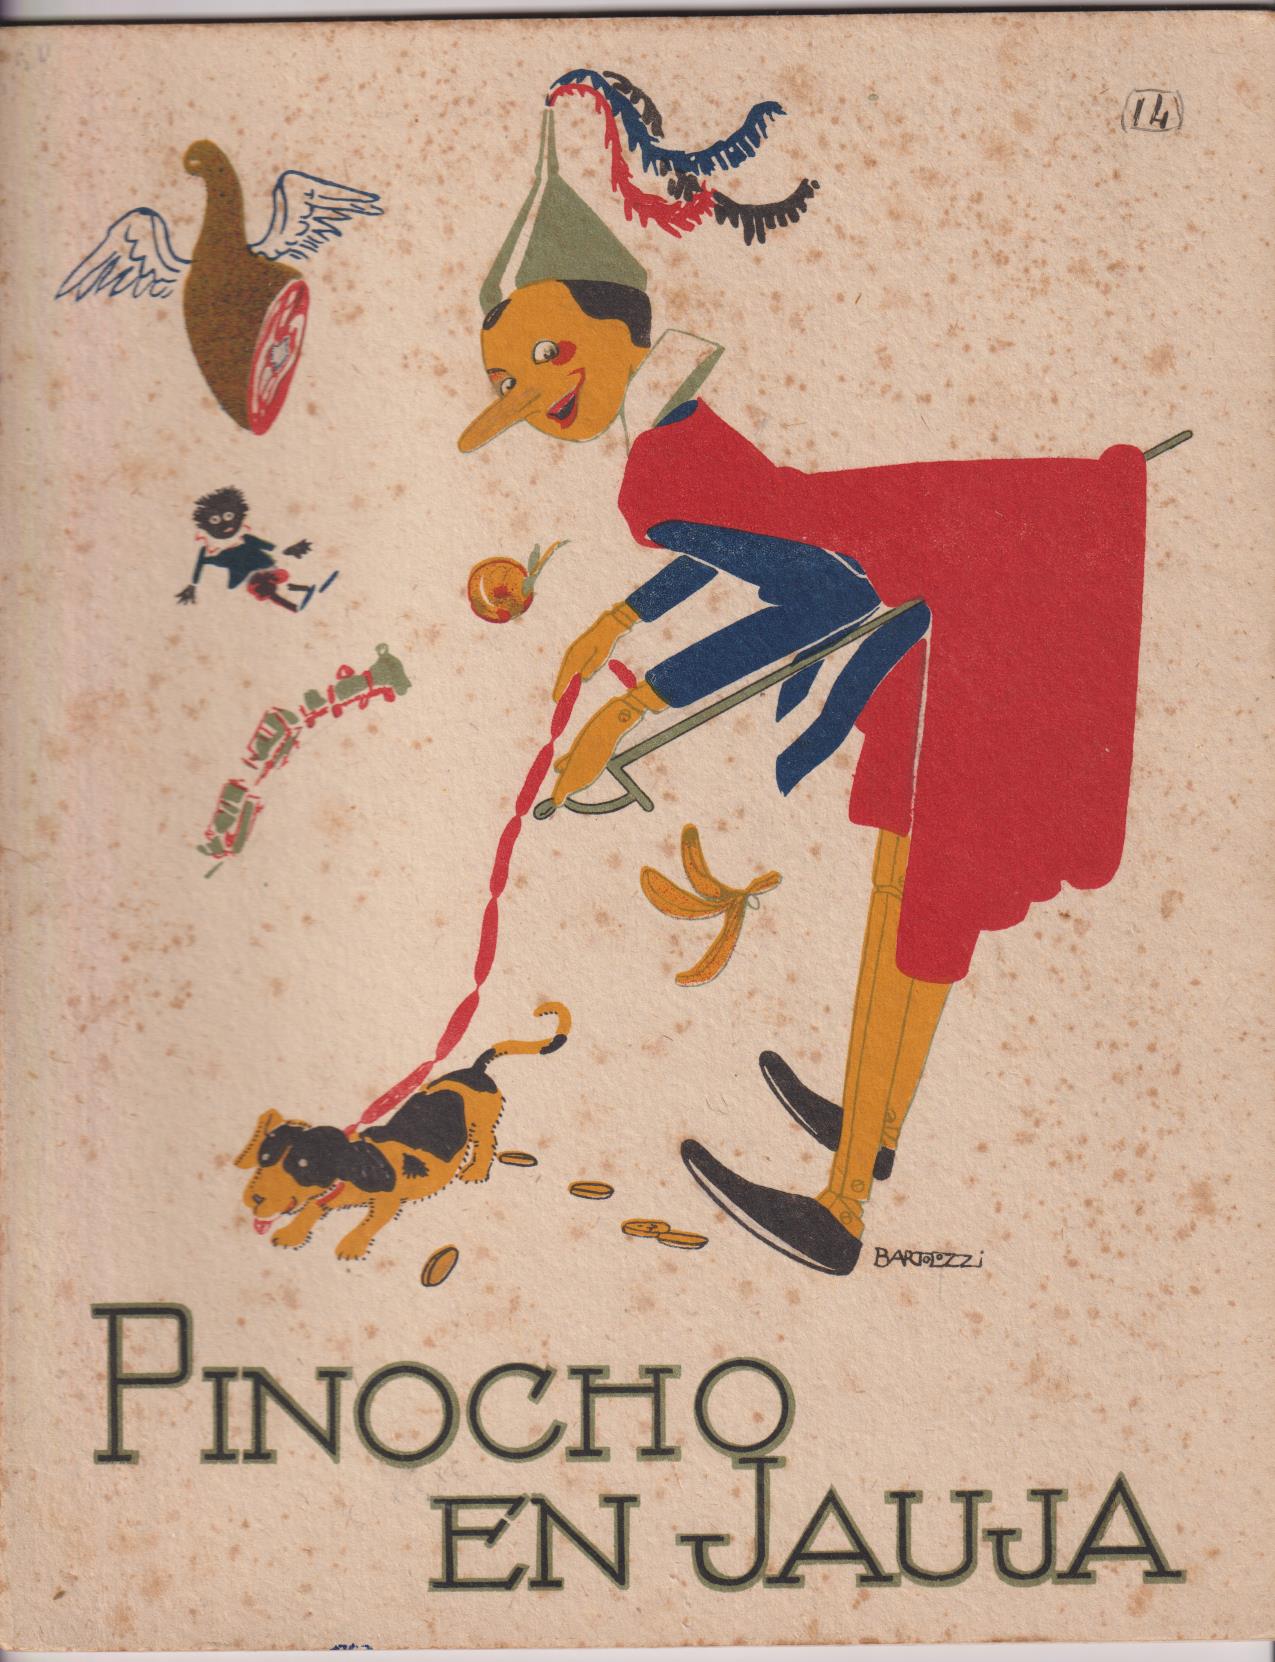 Pinocho nº 14. Pinocho en jauja. 1ª Edición Calleja 1919. (28x22) 16 páginas. MUY ESCASO